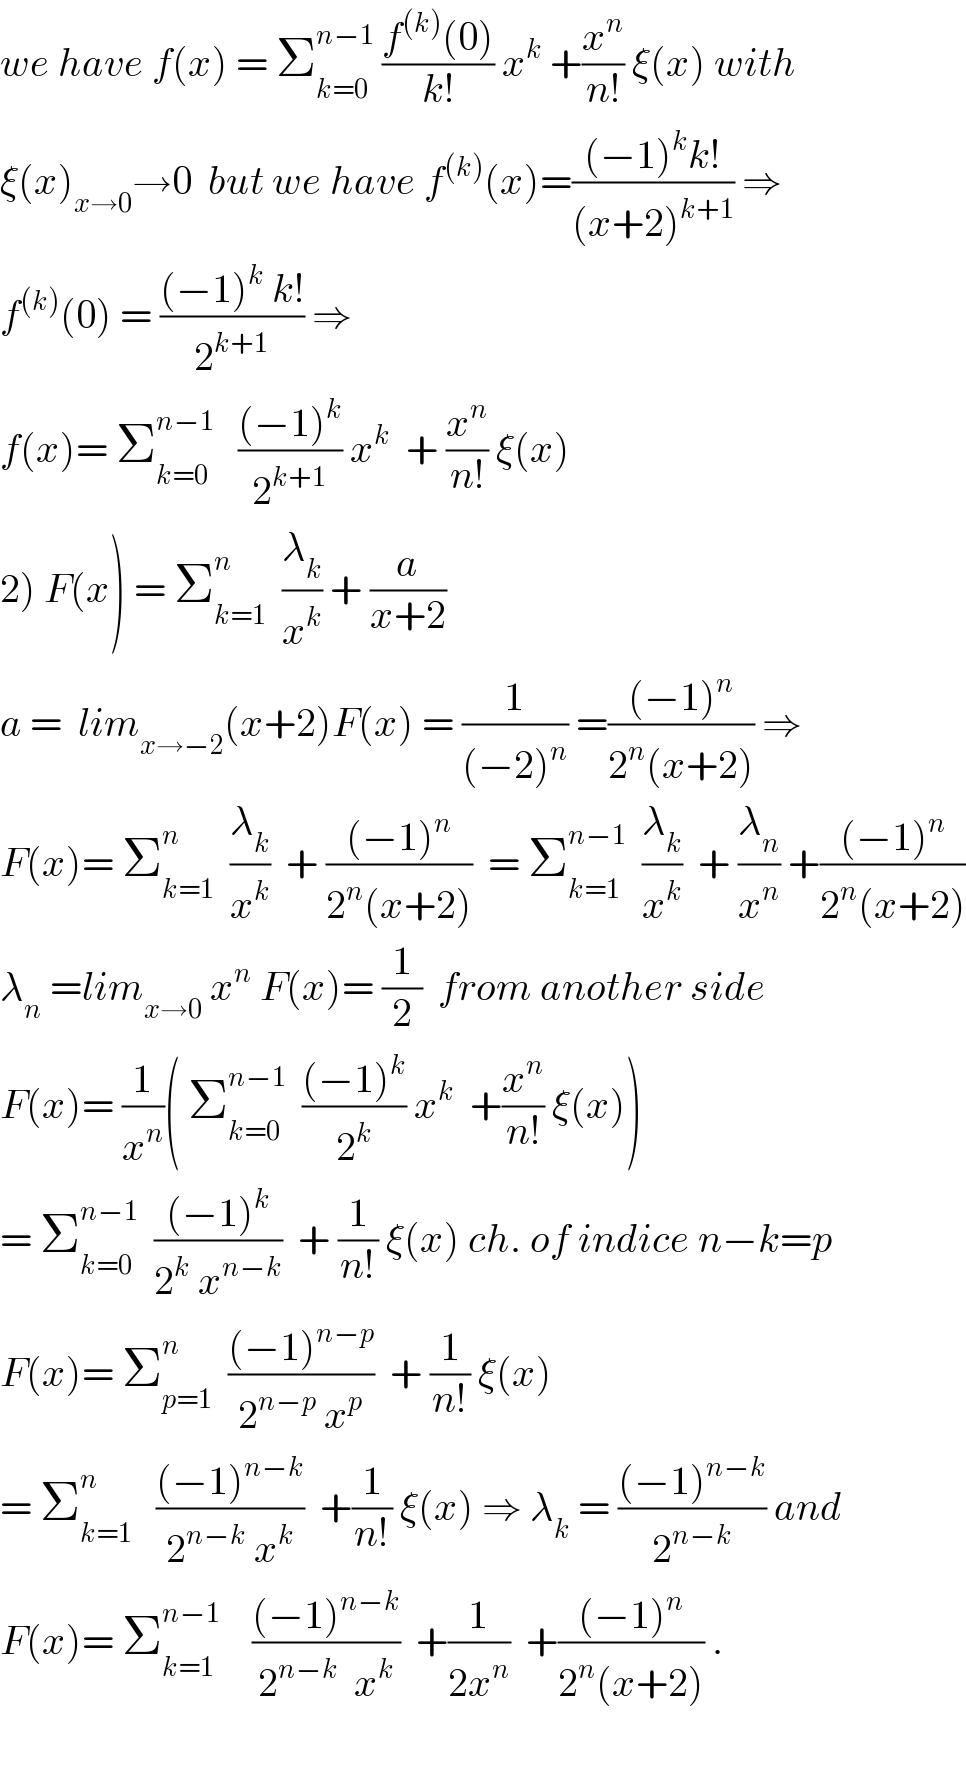 we have f(x) = Σ_(k=0) ^(n−1)  ((f^((k)) (0))/(k!)) x^k  +(x^n /(n!)) ξ(x) with  ξ(x)_(x→0) →0  but we have f^((k)) (x)=(((−1)^k k!)/((x+2)^(k+1) )) ⇒  f^((k)) (0) = (((−1)^k  k!)/2^(k+1) ) ⇒  f(x)= Σ_(k=0) ^(n−1)    (((−1)^k )/2^(k+1) ) x^k   + (x^n /(n!)) ξ(x)  2) F(x) = Σ_(k=1) ^n   (λ_k /x^k ) + (a/(x+2))  a =  lim_(x→−2) (x+2)F(x) = (1/((−2)^n )) =(((−1)^n )/(2^n (x+2))) ⇒  F(x)= Σ_(k=1) ^n   (λ_k /x^k )  + (((−1)^n )/(2^n (x+2)))  = Σ_(k=1) ^(n−1)   (λ_k /x^k )  + (λ_n /x^n ) +(((−1)^n )/(2^n (x+2)))  λ_n  =lim_(x→0)  x^n  F(x)= (1/2)  from another side  F(x)= (1/x^n )( Σ_(k=0) ^(n−1)   (((−1)^k )/2^k ) x^k   +(x^n /(n!)) ξ(x))  = Σ_(k=0) ^(n−1)   (((−1)^k )/(2^k  x^(n−k) ))  + (1/(n!)) ξ(x) ch. of indice n−k=p  F(x)= Σ_(p=1) ^n   (((−1)^(n−p) )/(2^(n−p)  x^p ))  + (1/(n!)) ξ(x)  = Σ_(k=1) ^n    (((−1)^(n−k) )/(2^(n−k)  x^k ))  +(1/(n!)) ξ(x) ⇒ λ_k  = (((−1)^(n−k) )/2^(n−k) ) and  F(x)= Σ_(k=1) ^(n−1)     (((−1)^(n−k) )/(2^(n−k)   x^k ))  +(1/(2x^n ))  +(((−1)^n )/(2^n (x+2))) .    